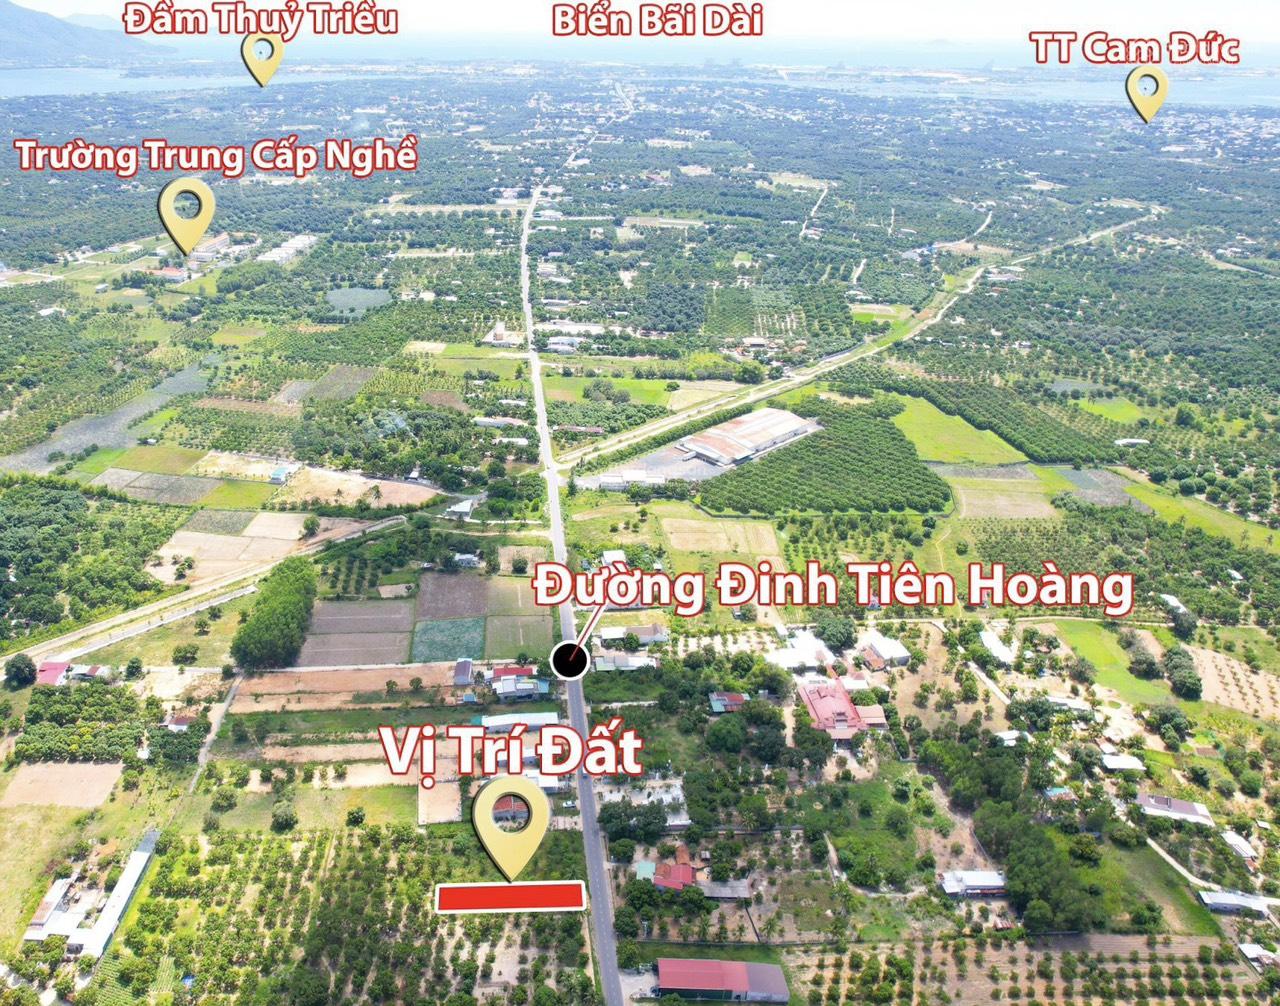 Bán đất Full thổ cư giá cực kì rẻ mặt Đường Đinh Tiên Hoàng, Xã Cam Hiệp Bắc, Cam Lâm, Khánh Hòa 13291446